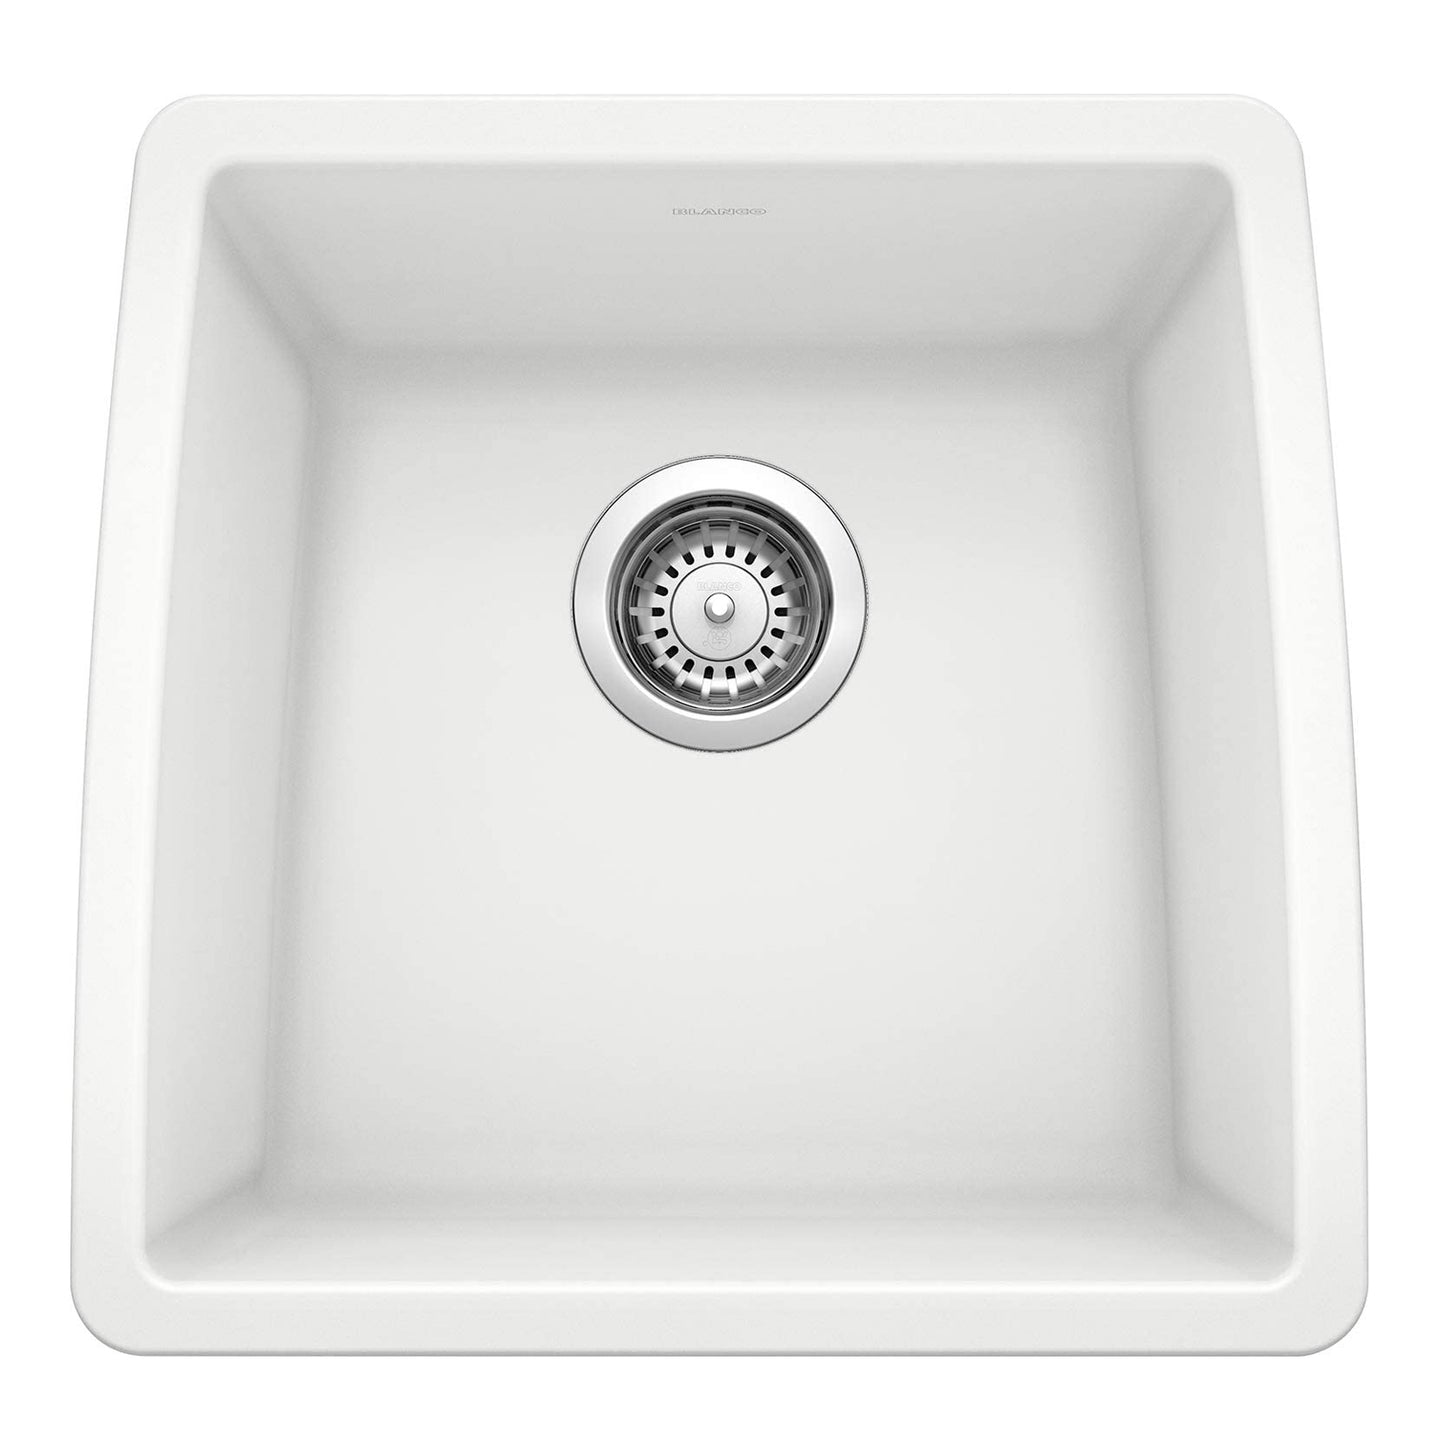 440081 - 17.5" x 17" Performa Undermount Bar Sink - White